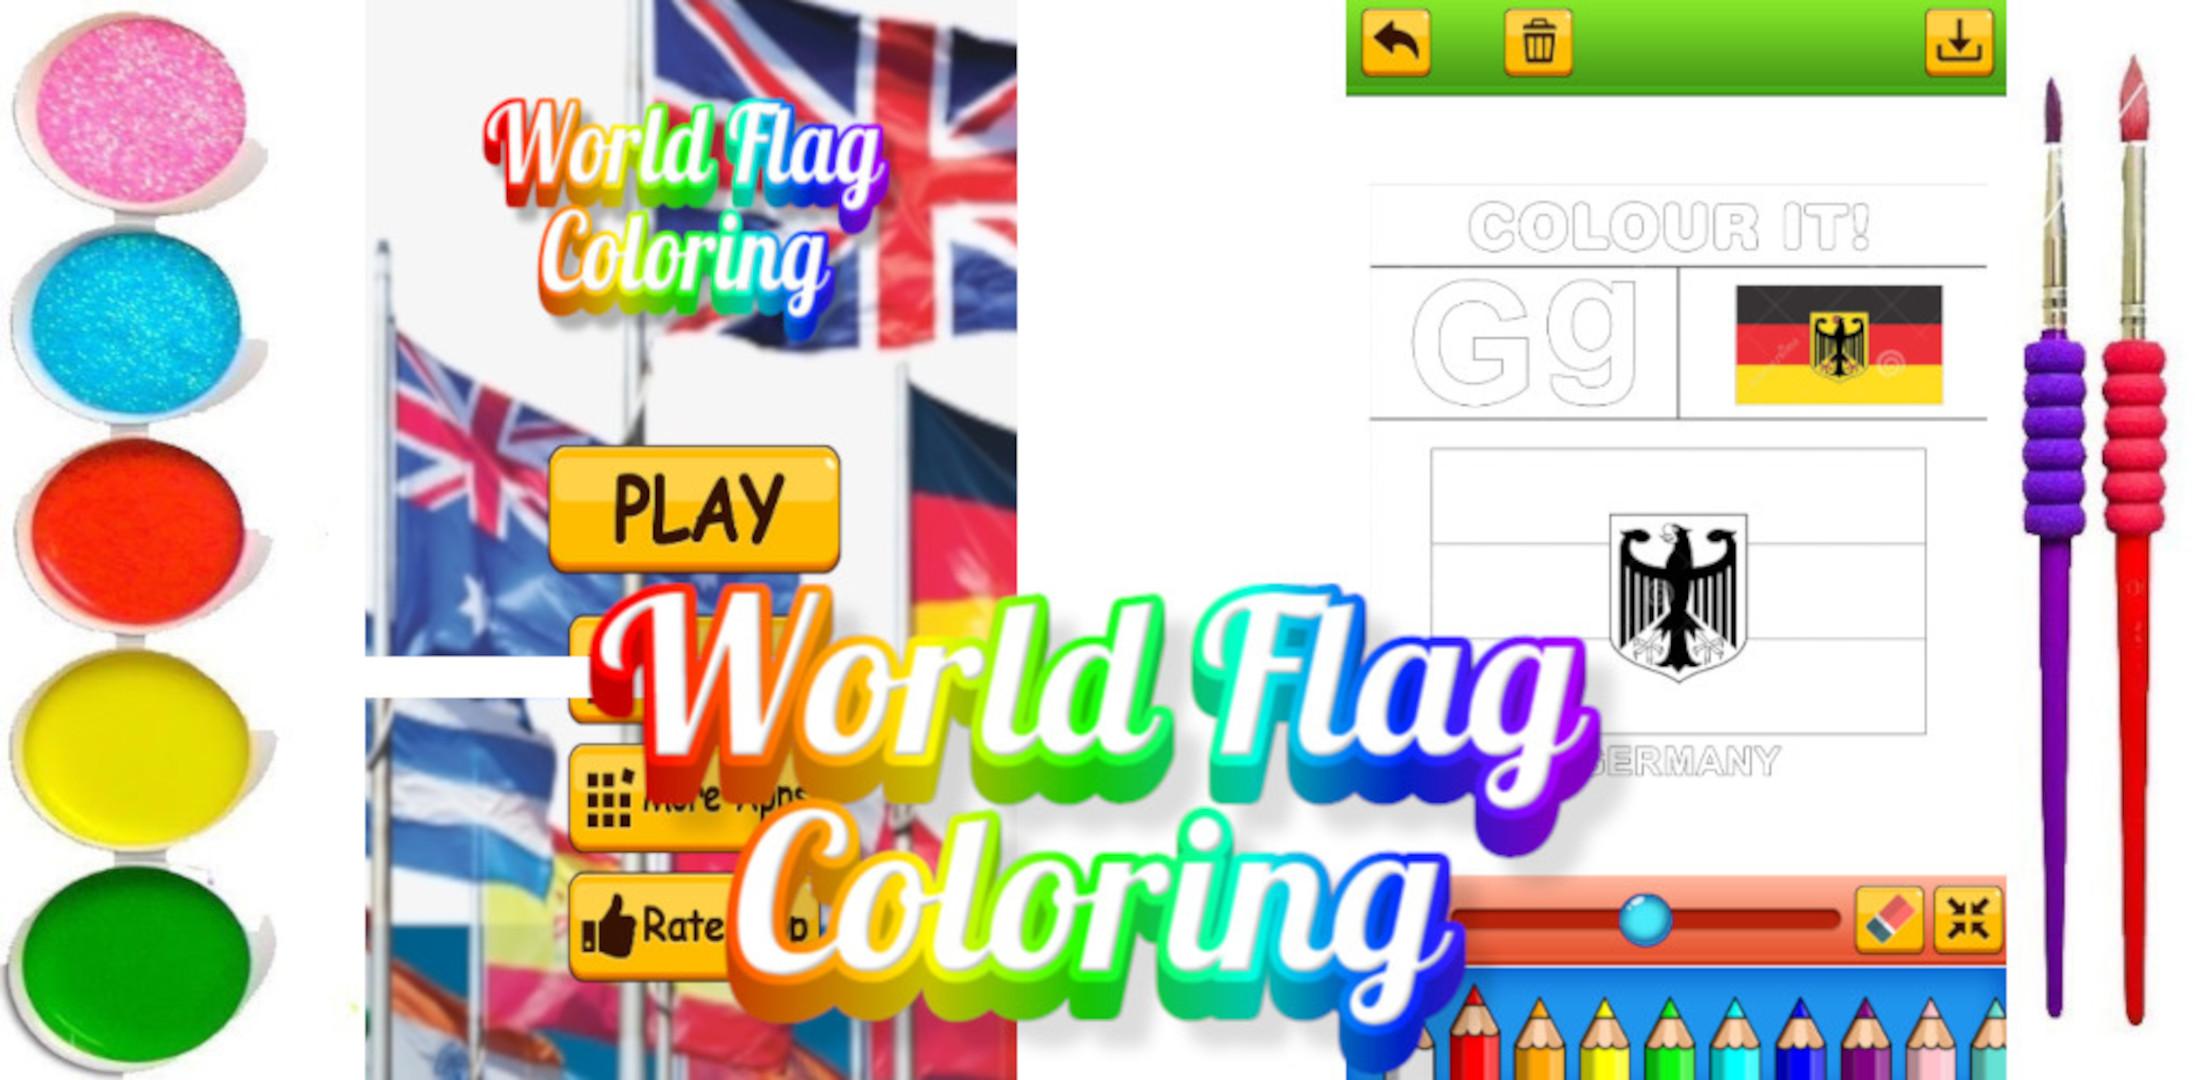 Desenhos para colorir de bandeira do brasil para colorir , jogo de colorir